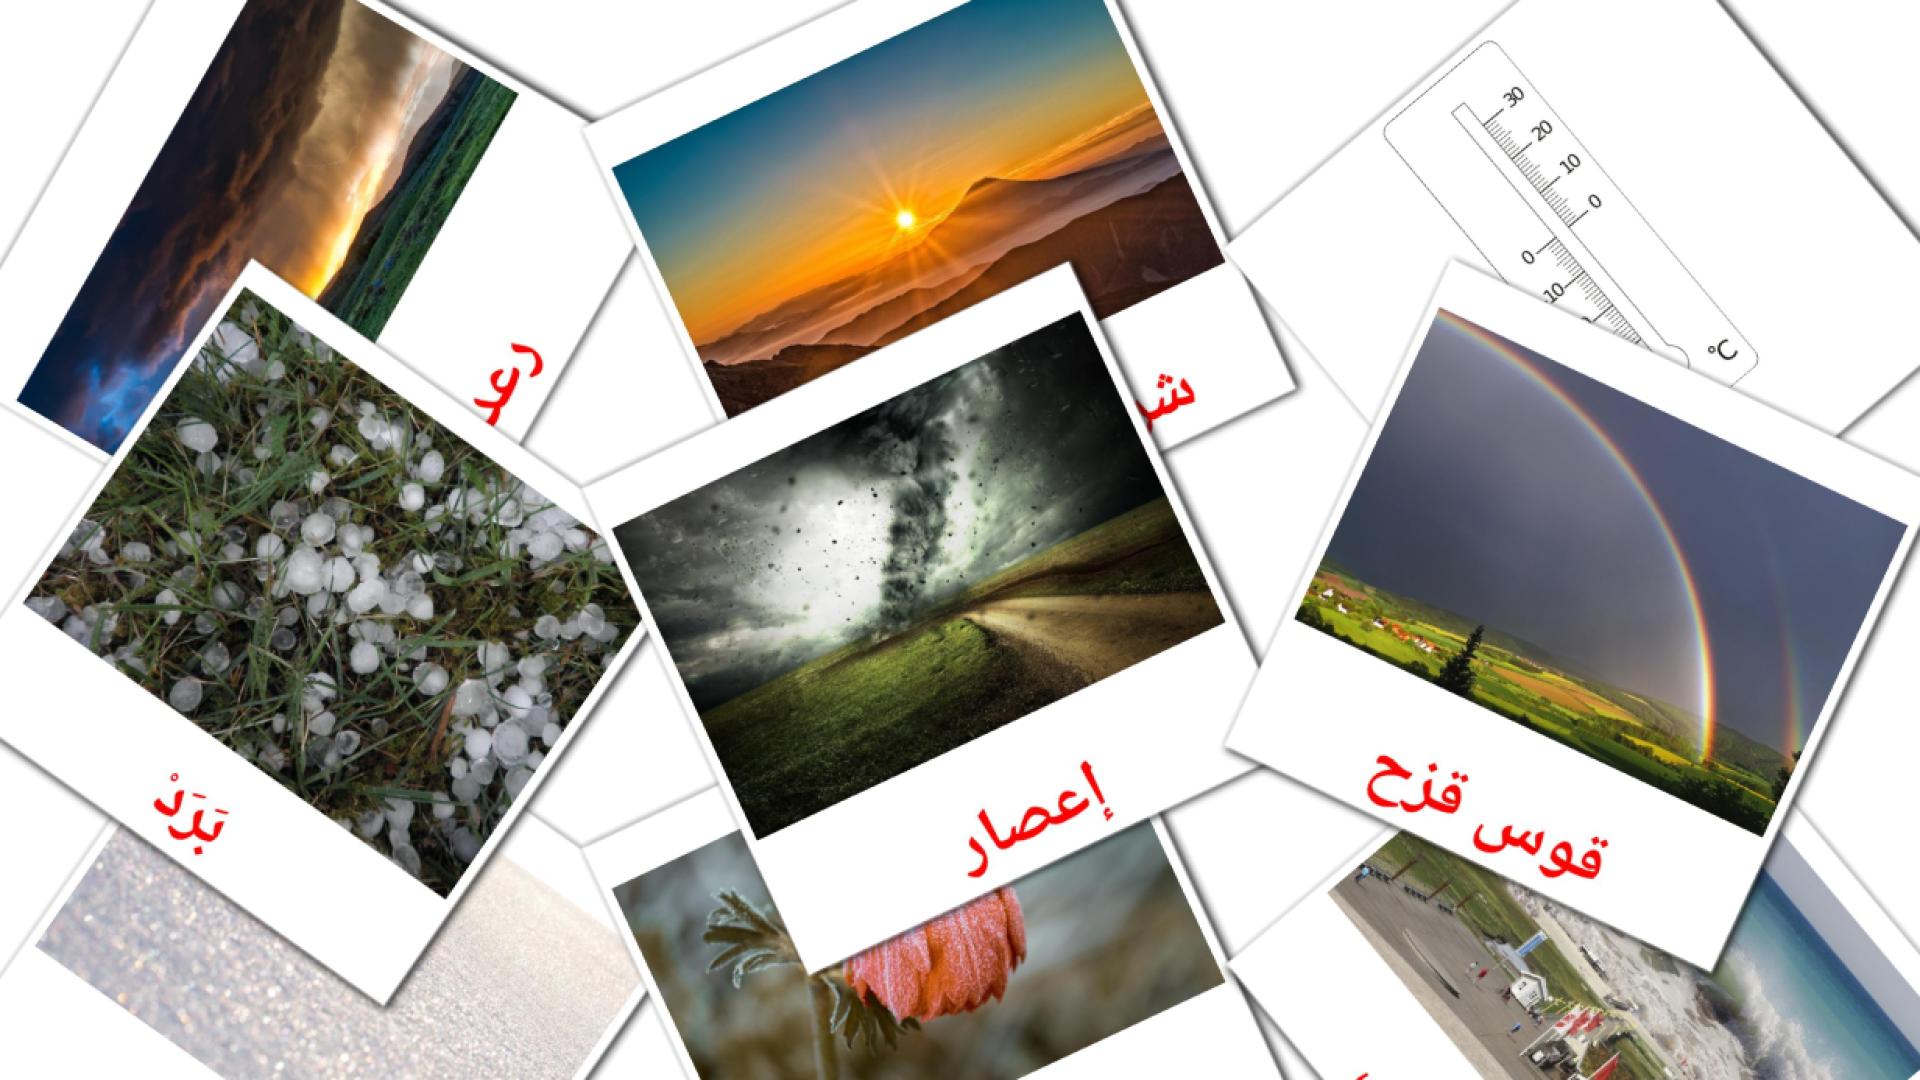 Wetter - Arabisch Vokabelkarten